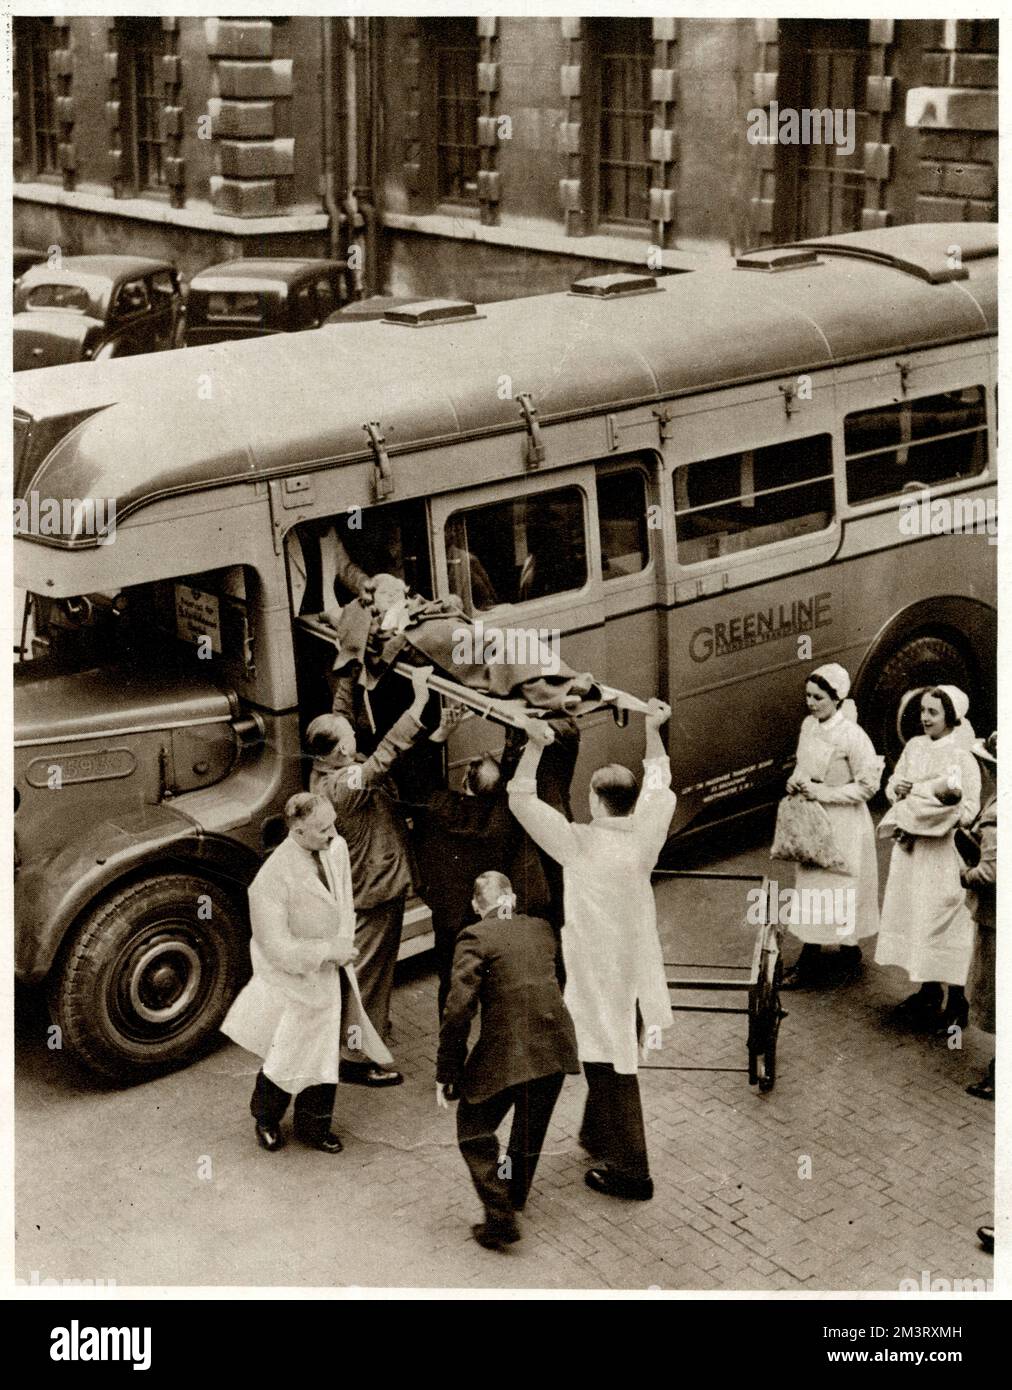 Paziente dell'ospedale di Bart sollevato su una barella in un allenatore ospedaliero Green Line appositamente attrezzato. Come parte dei preparativi per la guerra, molti autobus sono stati inviati fuori dagli ospedali e convertiti in ambulanze per evacuare i pazienti in caso di incursioni aeree, con sedili sostituiti da scaffali per trasportare barelle. Data: 1939 Foto Stock